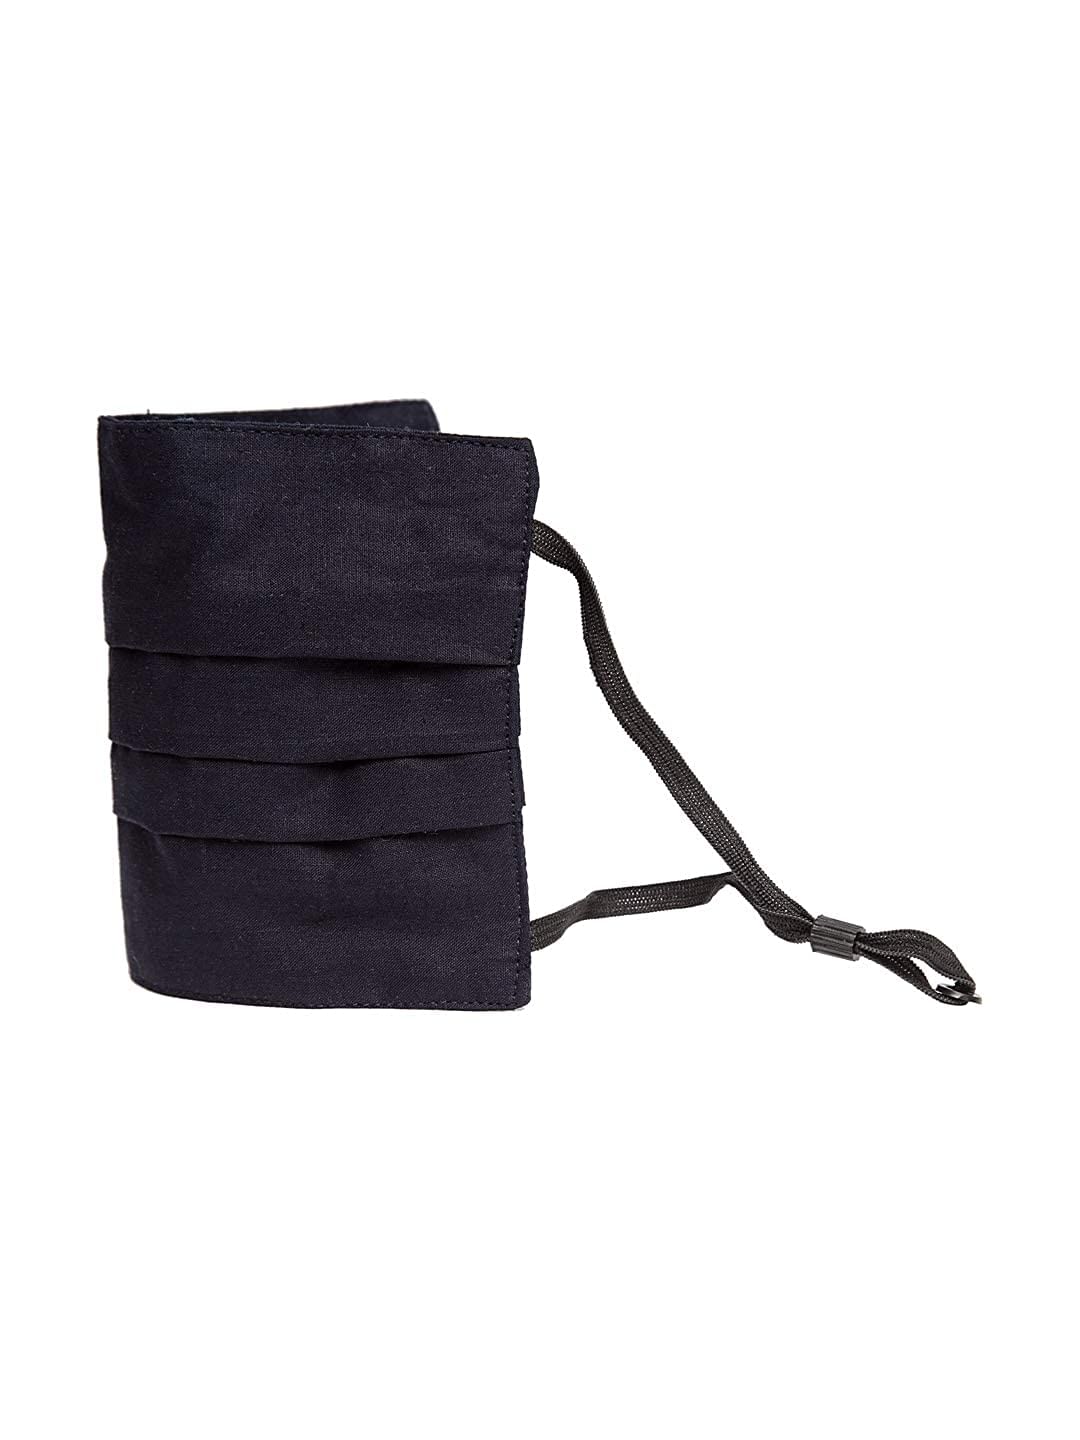 MSK Crossbody Bags | Mercari